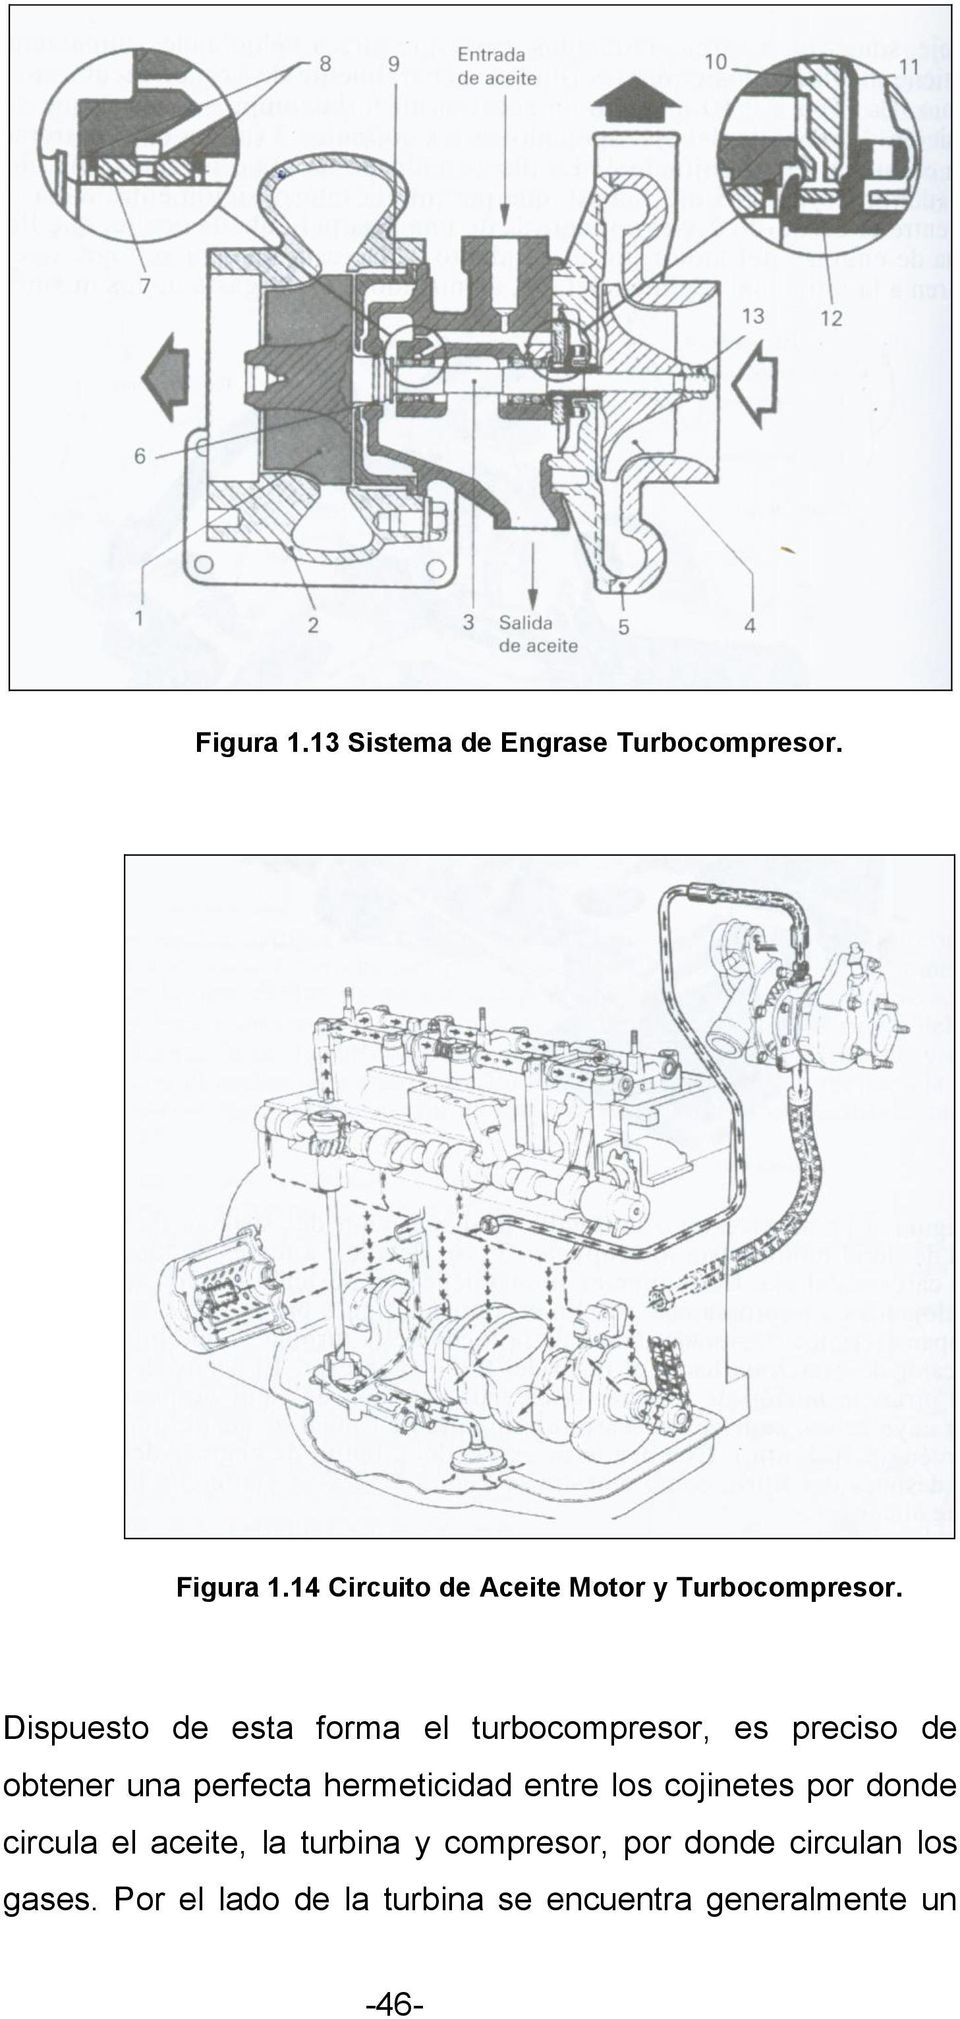 Dispuesto de esta forma el turbocompresor, es preciso de obtener una perfecta